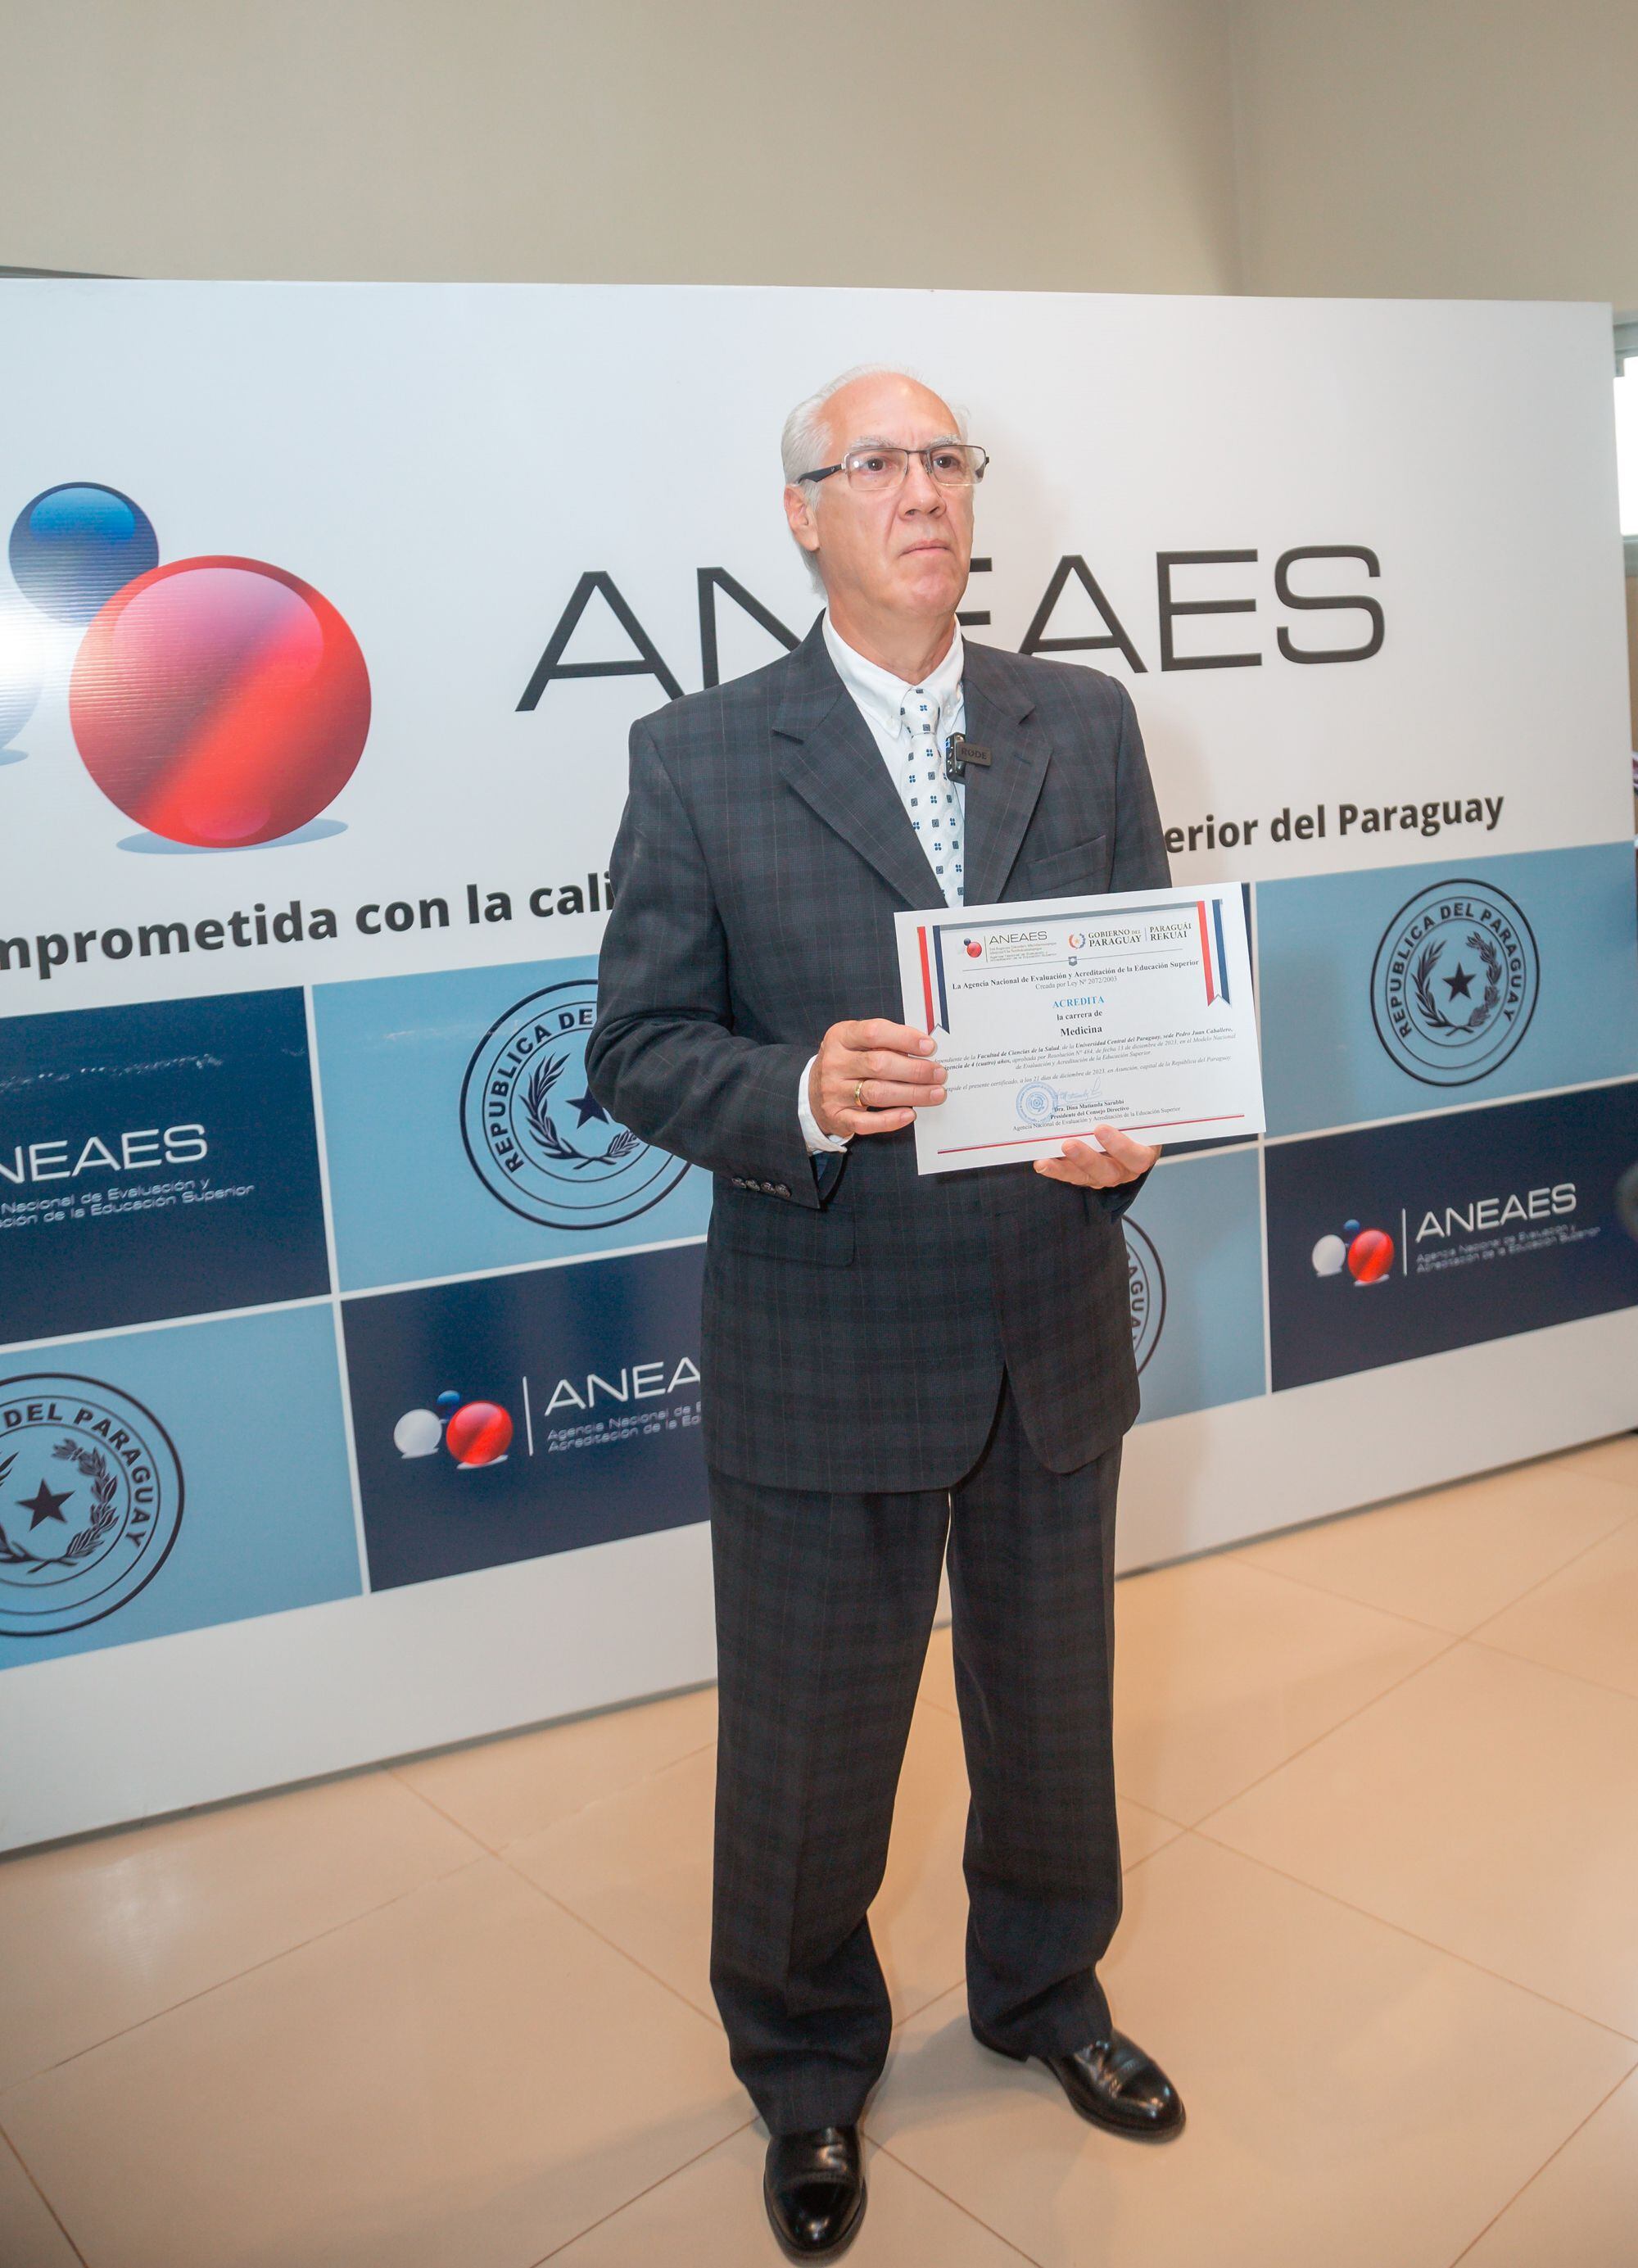 El rector de la Universidad Central del Paraguay, Ing. Luis Alberto López Zayas, exhibe con orgullo la acreditación recibida para la carrera de Medicina.
